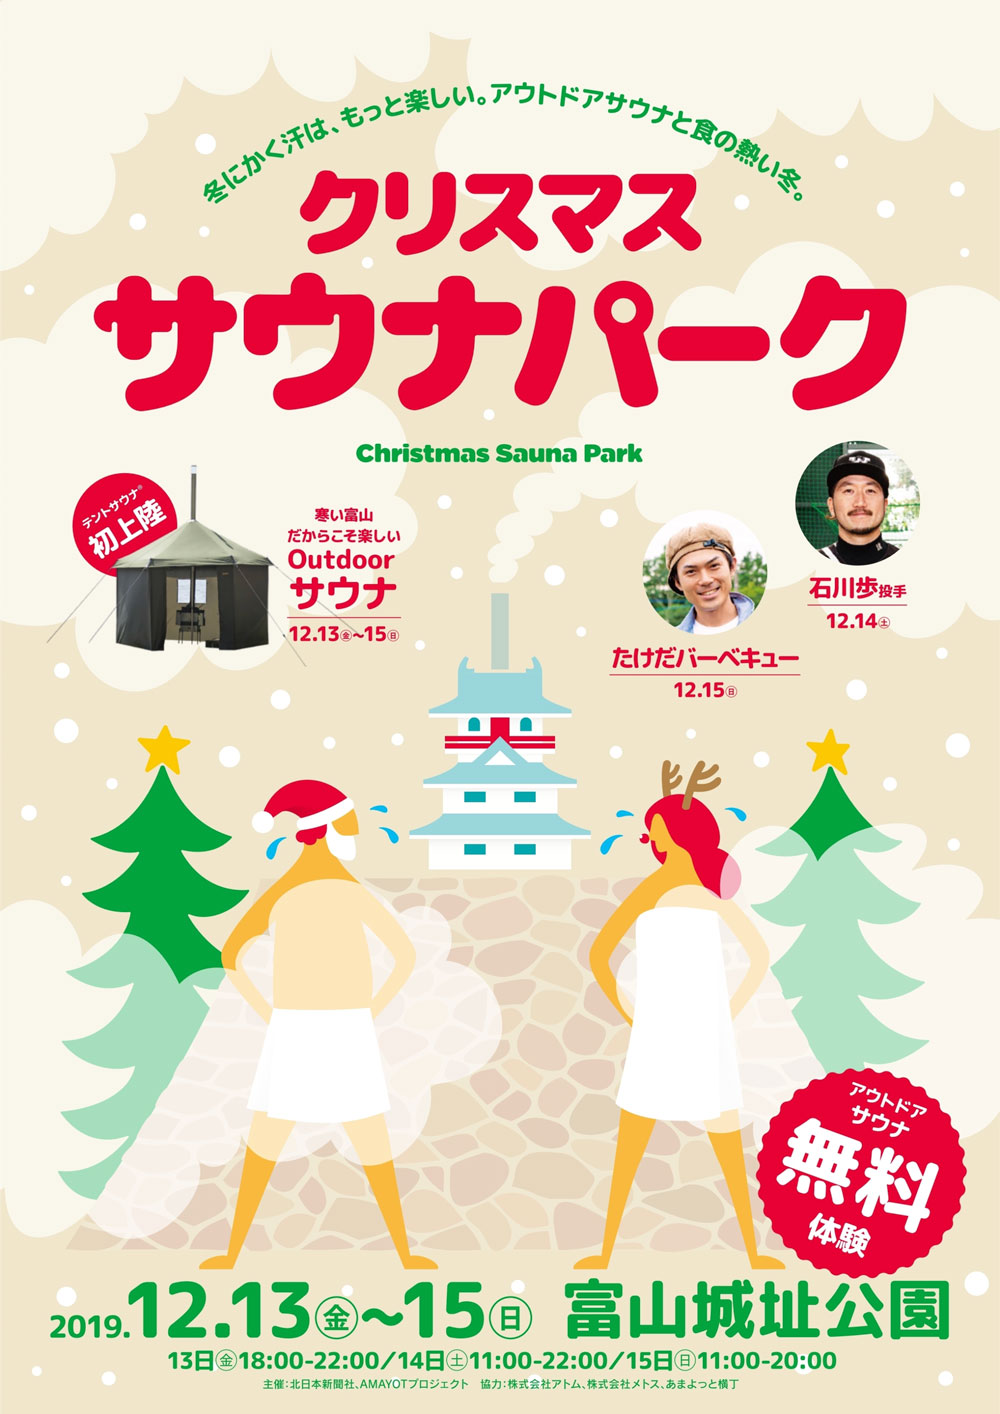 【クリスマスサウナパーク】富山城址公園でサウナ!?たけだバーベキューや石井歩投手も！